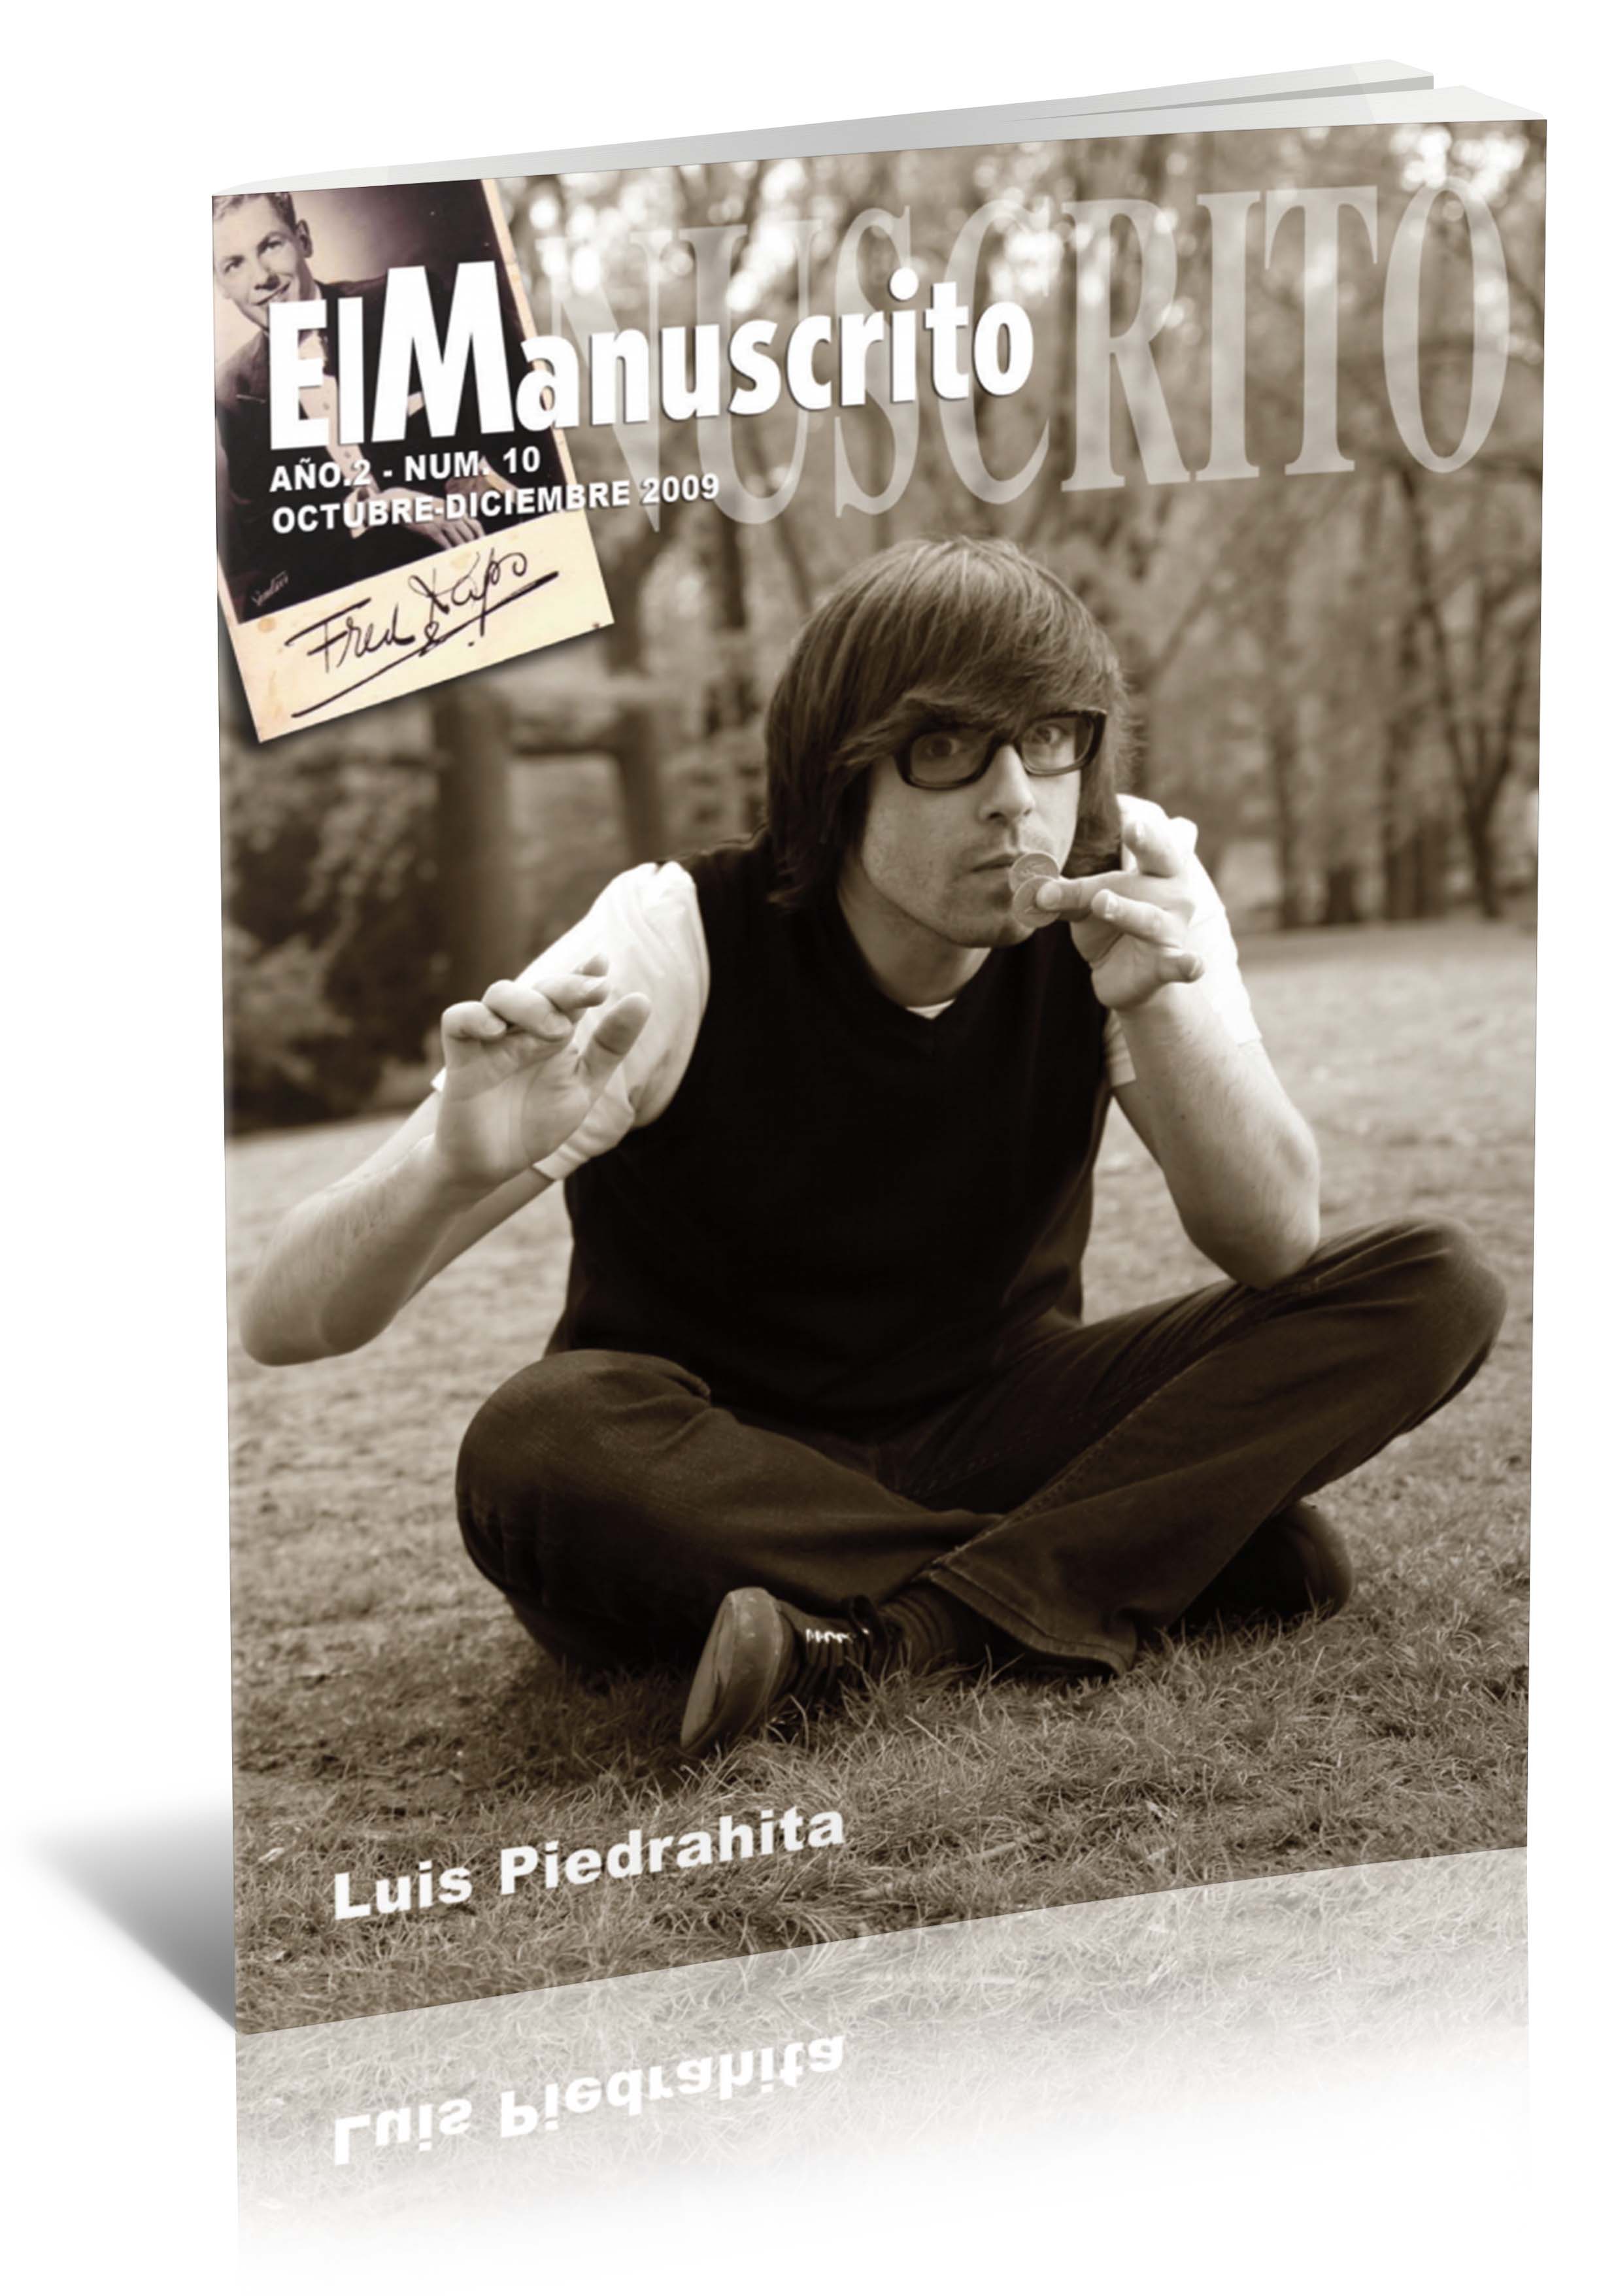 El Manuscrito Vol. 10 - Luis Piedrahita